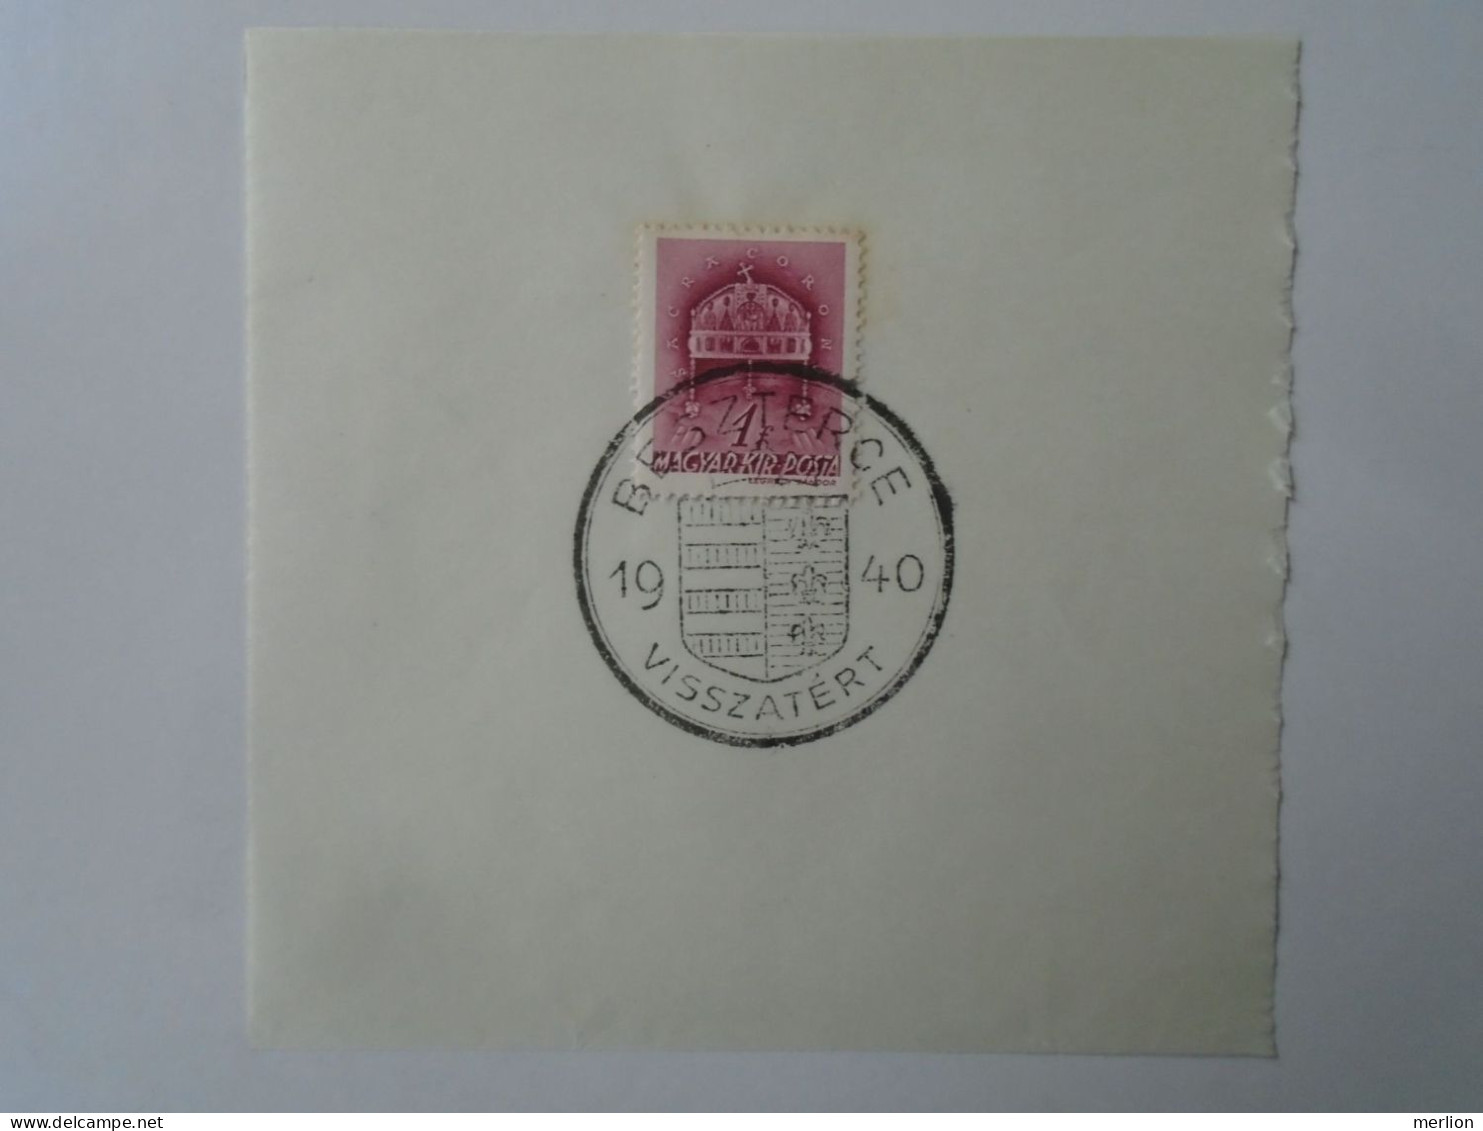 ZA451.64  Hungary - Beszterce  - Visszatért -Commemorative Postmark 1940 - Storia Postale